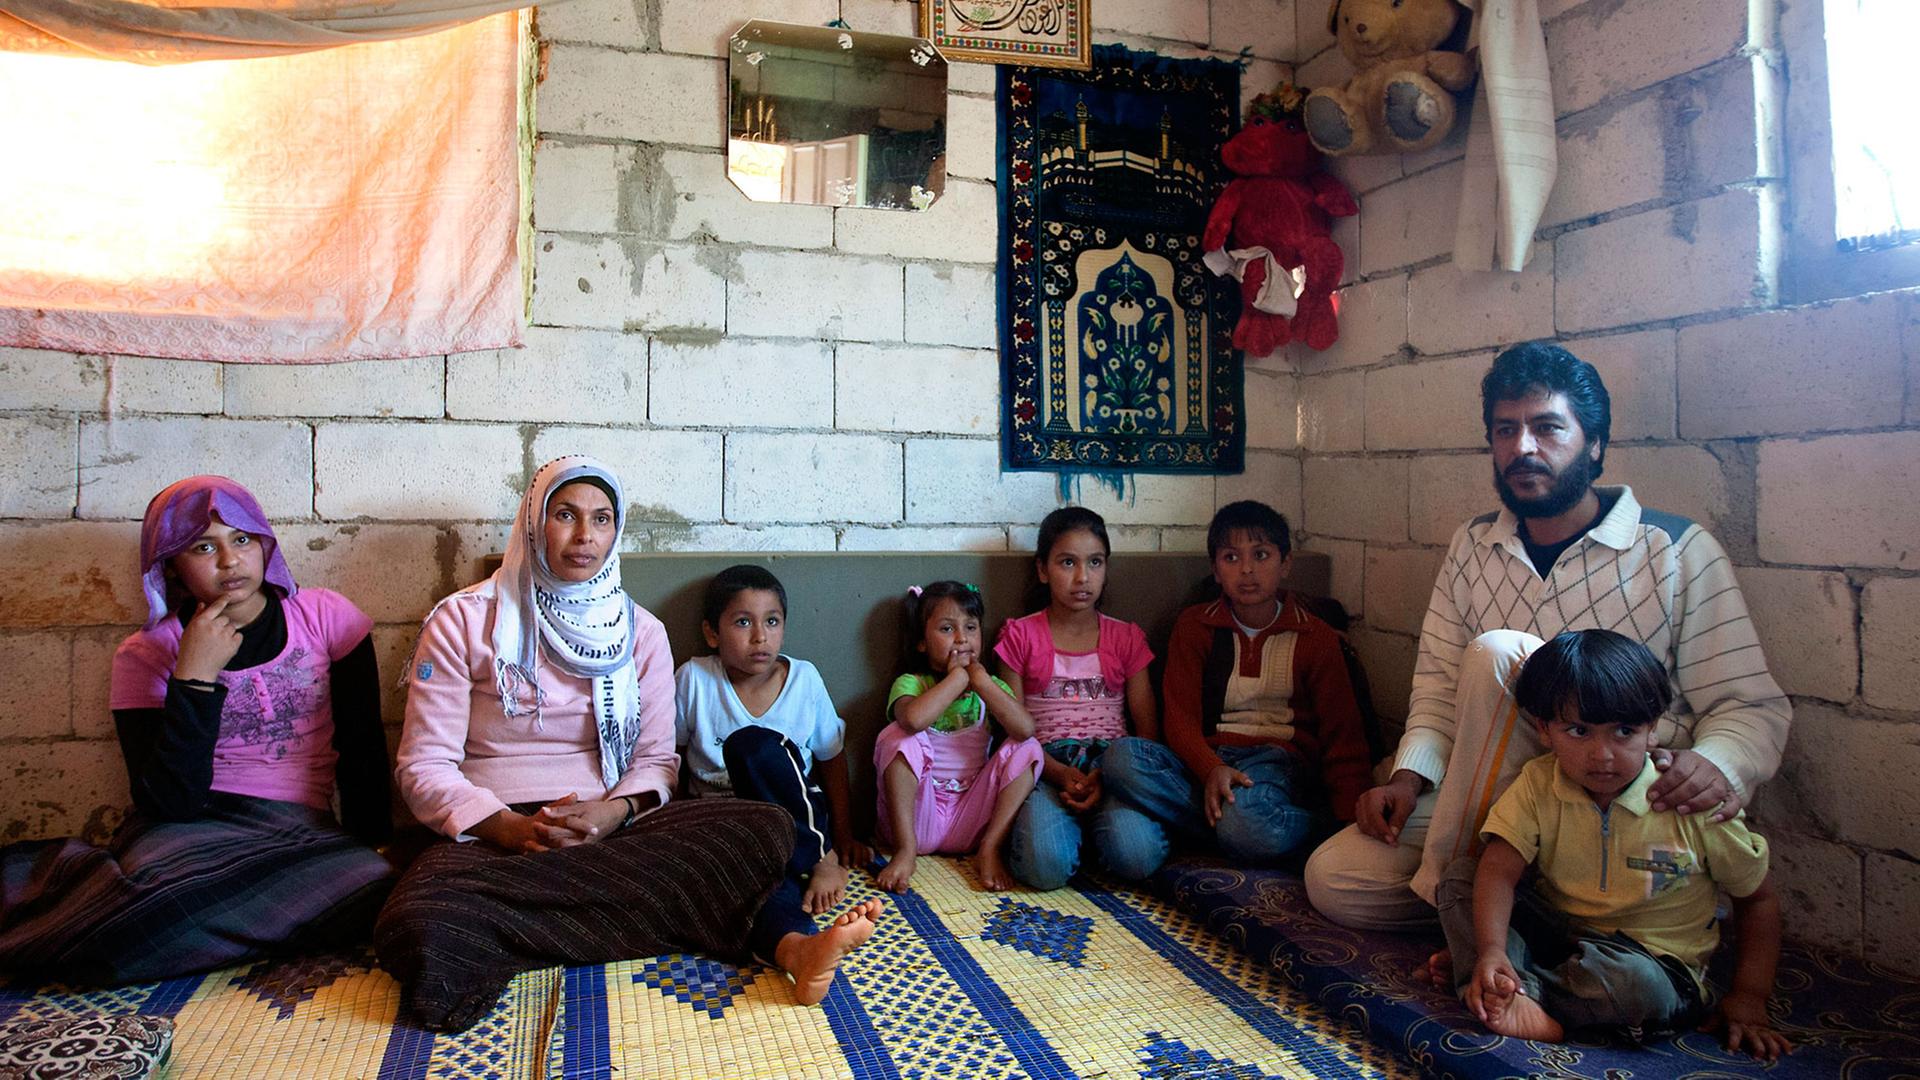 Eine syrische Familie - Mutter, Vater und sechs Kinder - sitzt in einer Wohnung mit unverputzten Wänden auf einem Teppich, an den Wänden hängen ein kleiner Spiegel, einzelne Bilder und zwei große Stoff-Teddybären.